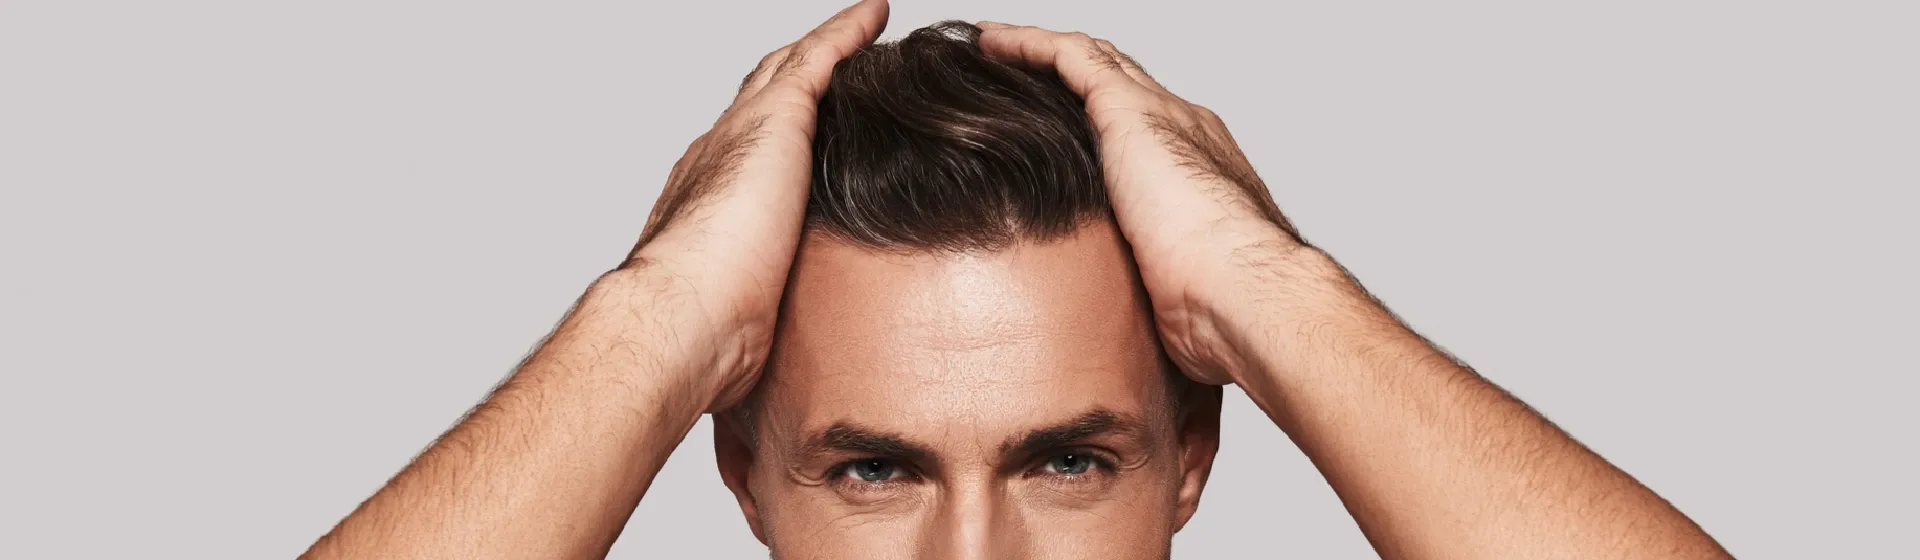 Pomada para cabelo: 7 melhores opções para os fios masculinos